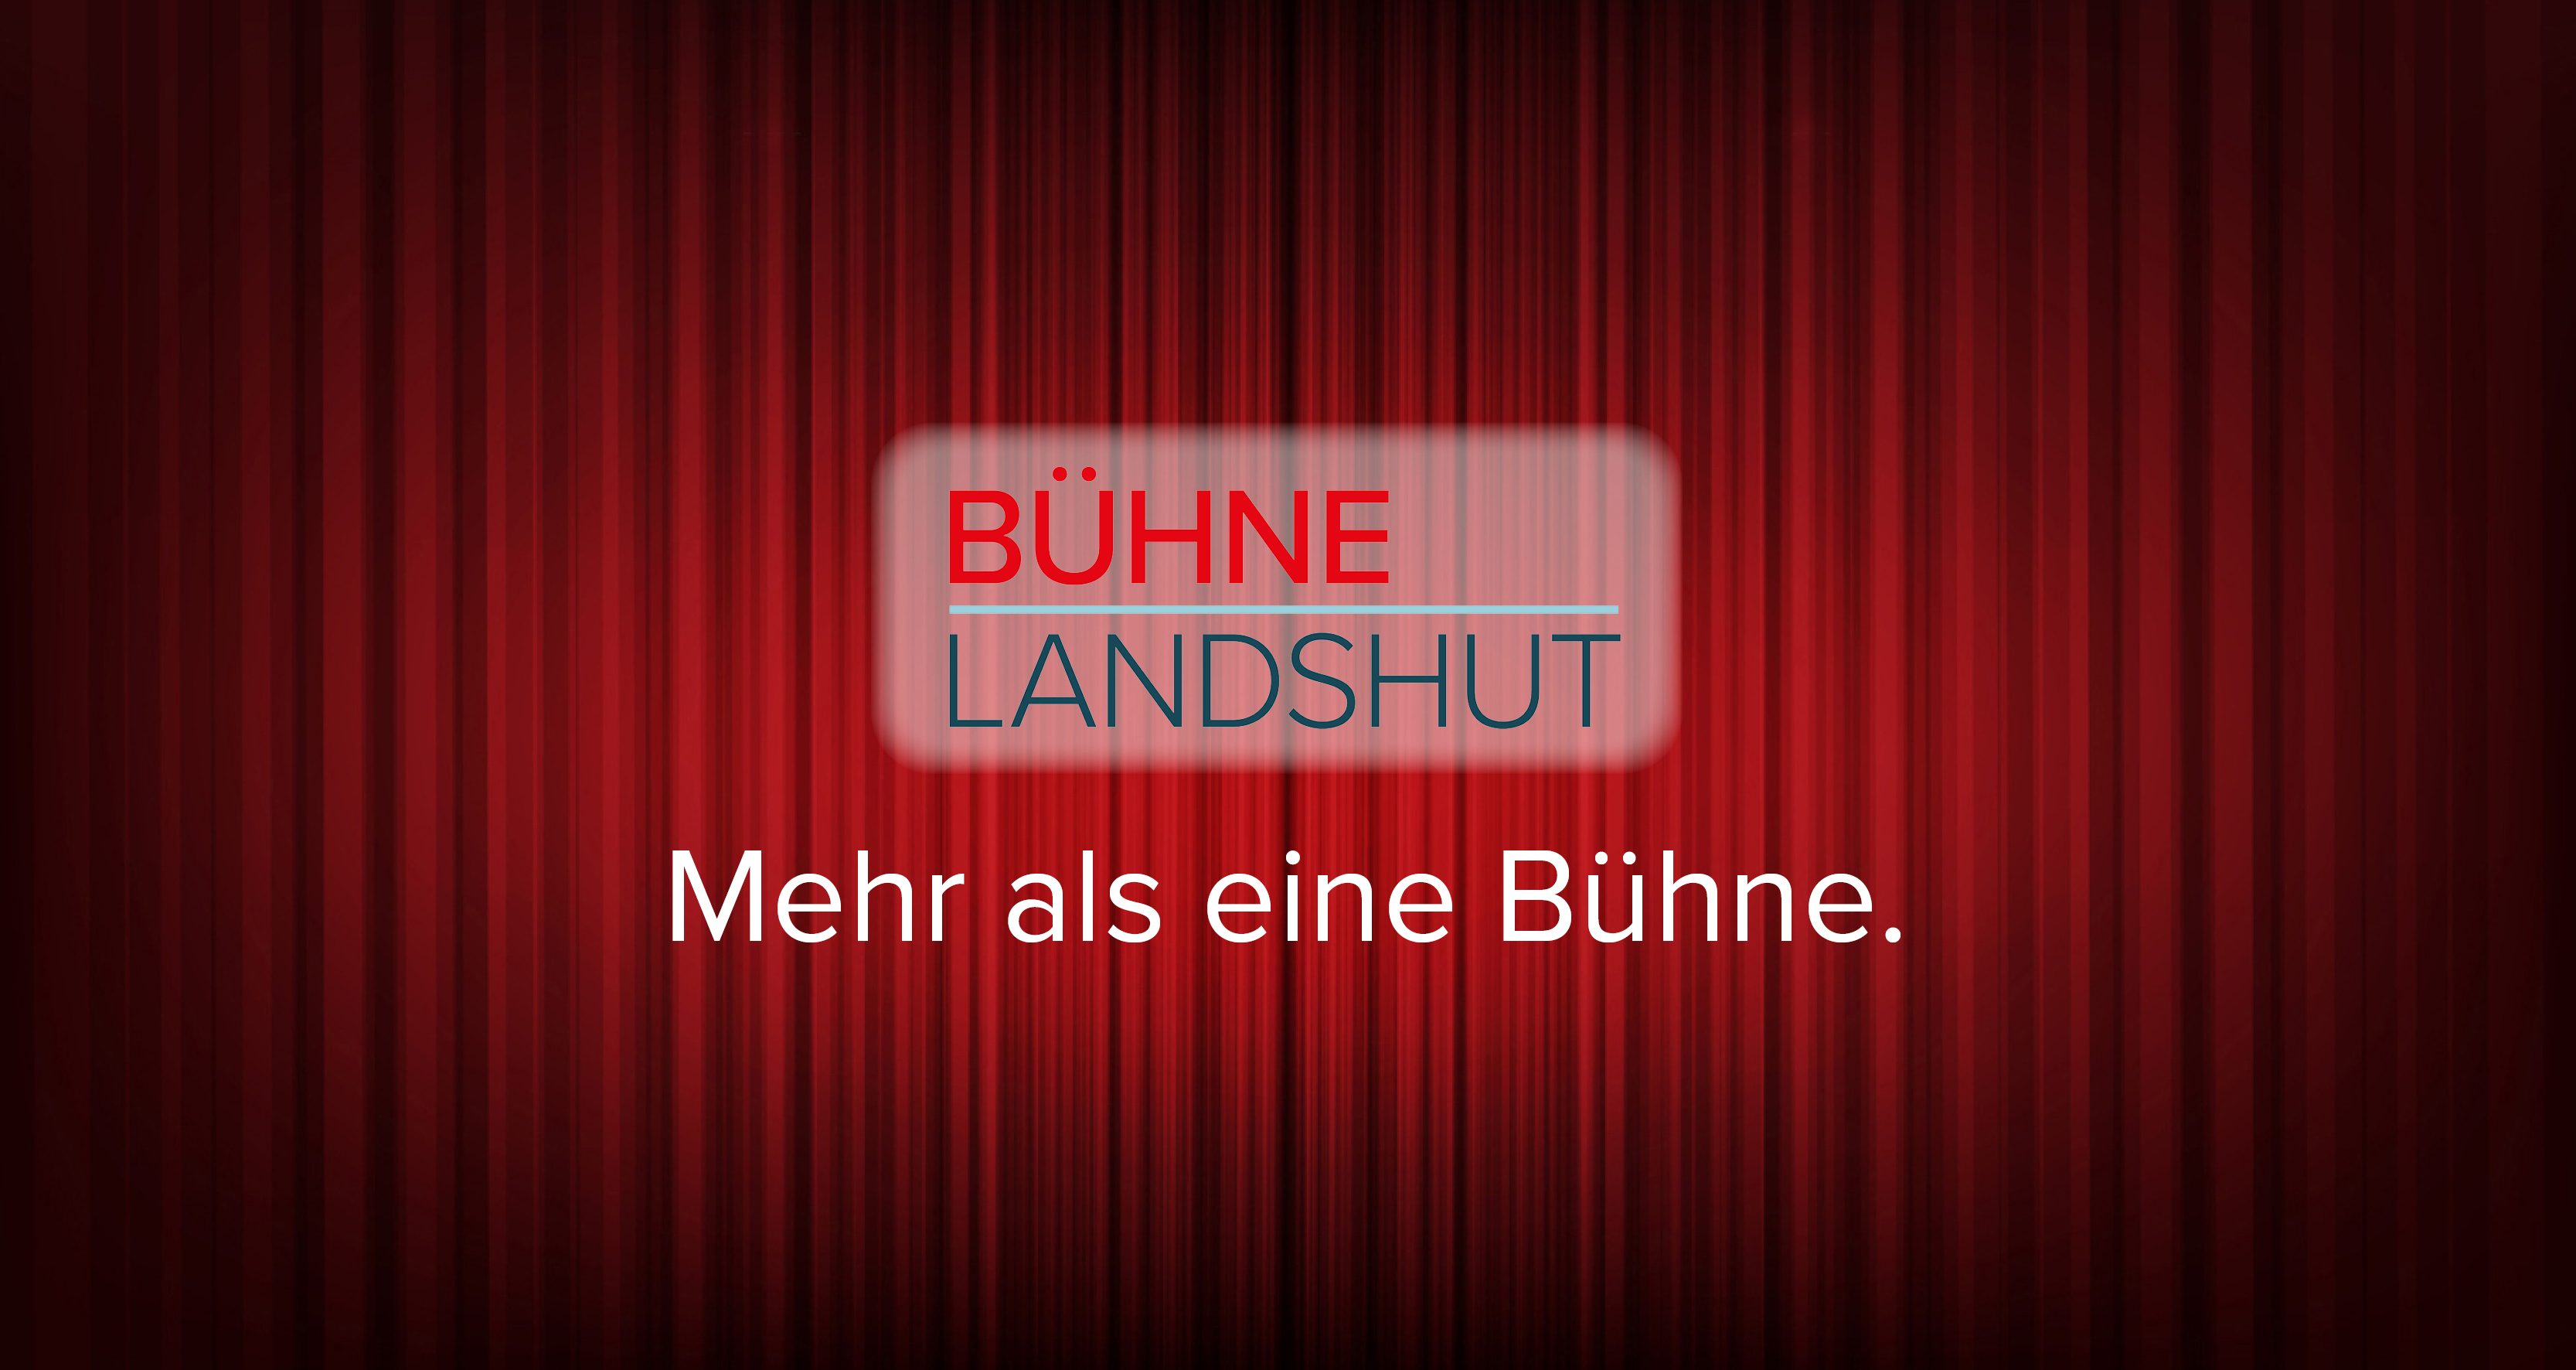 (c) Buehne-landshut.com